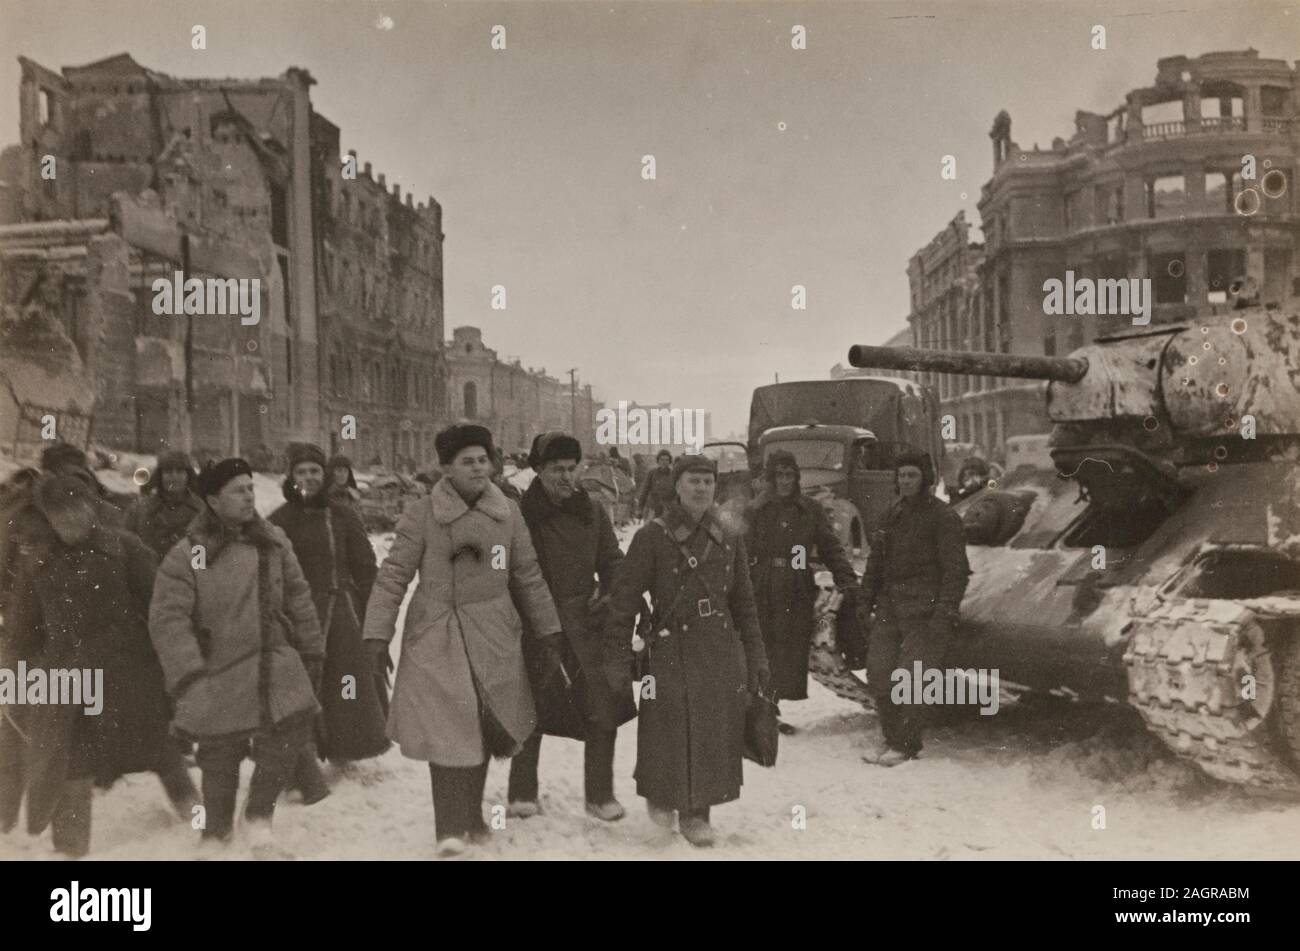 Dans l'inspection soviétique détruit Stalingrad, février 1943. Musée : collection privée. Auteur : Georgi Alexandrovich Zelma. Banque D'Images